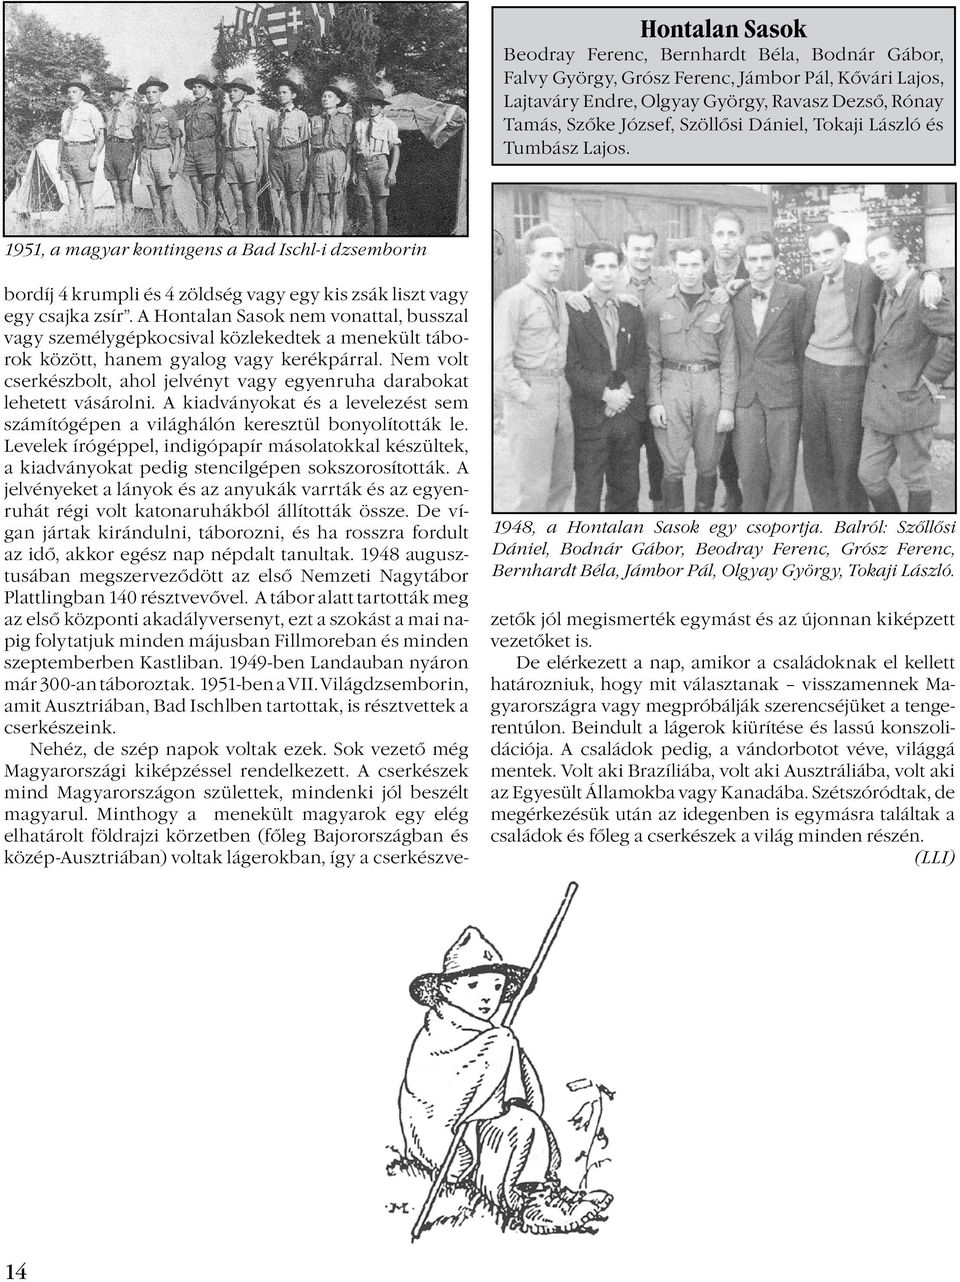 Balról: Szőllősi Dániel, Bodnár Gábor, Beodray Ferenc, Grósz Ferenc, Bernhardt Béla, Jámbor Pál, Olgyay György, Tokaji László.